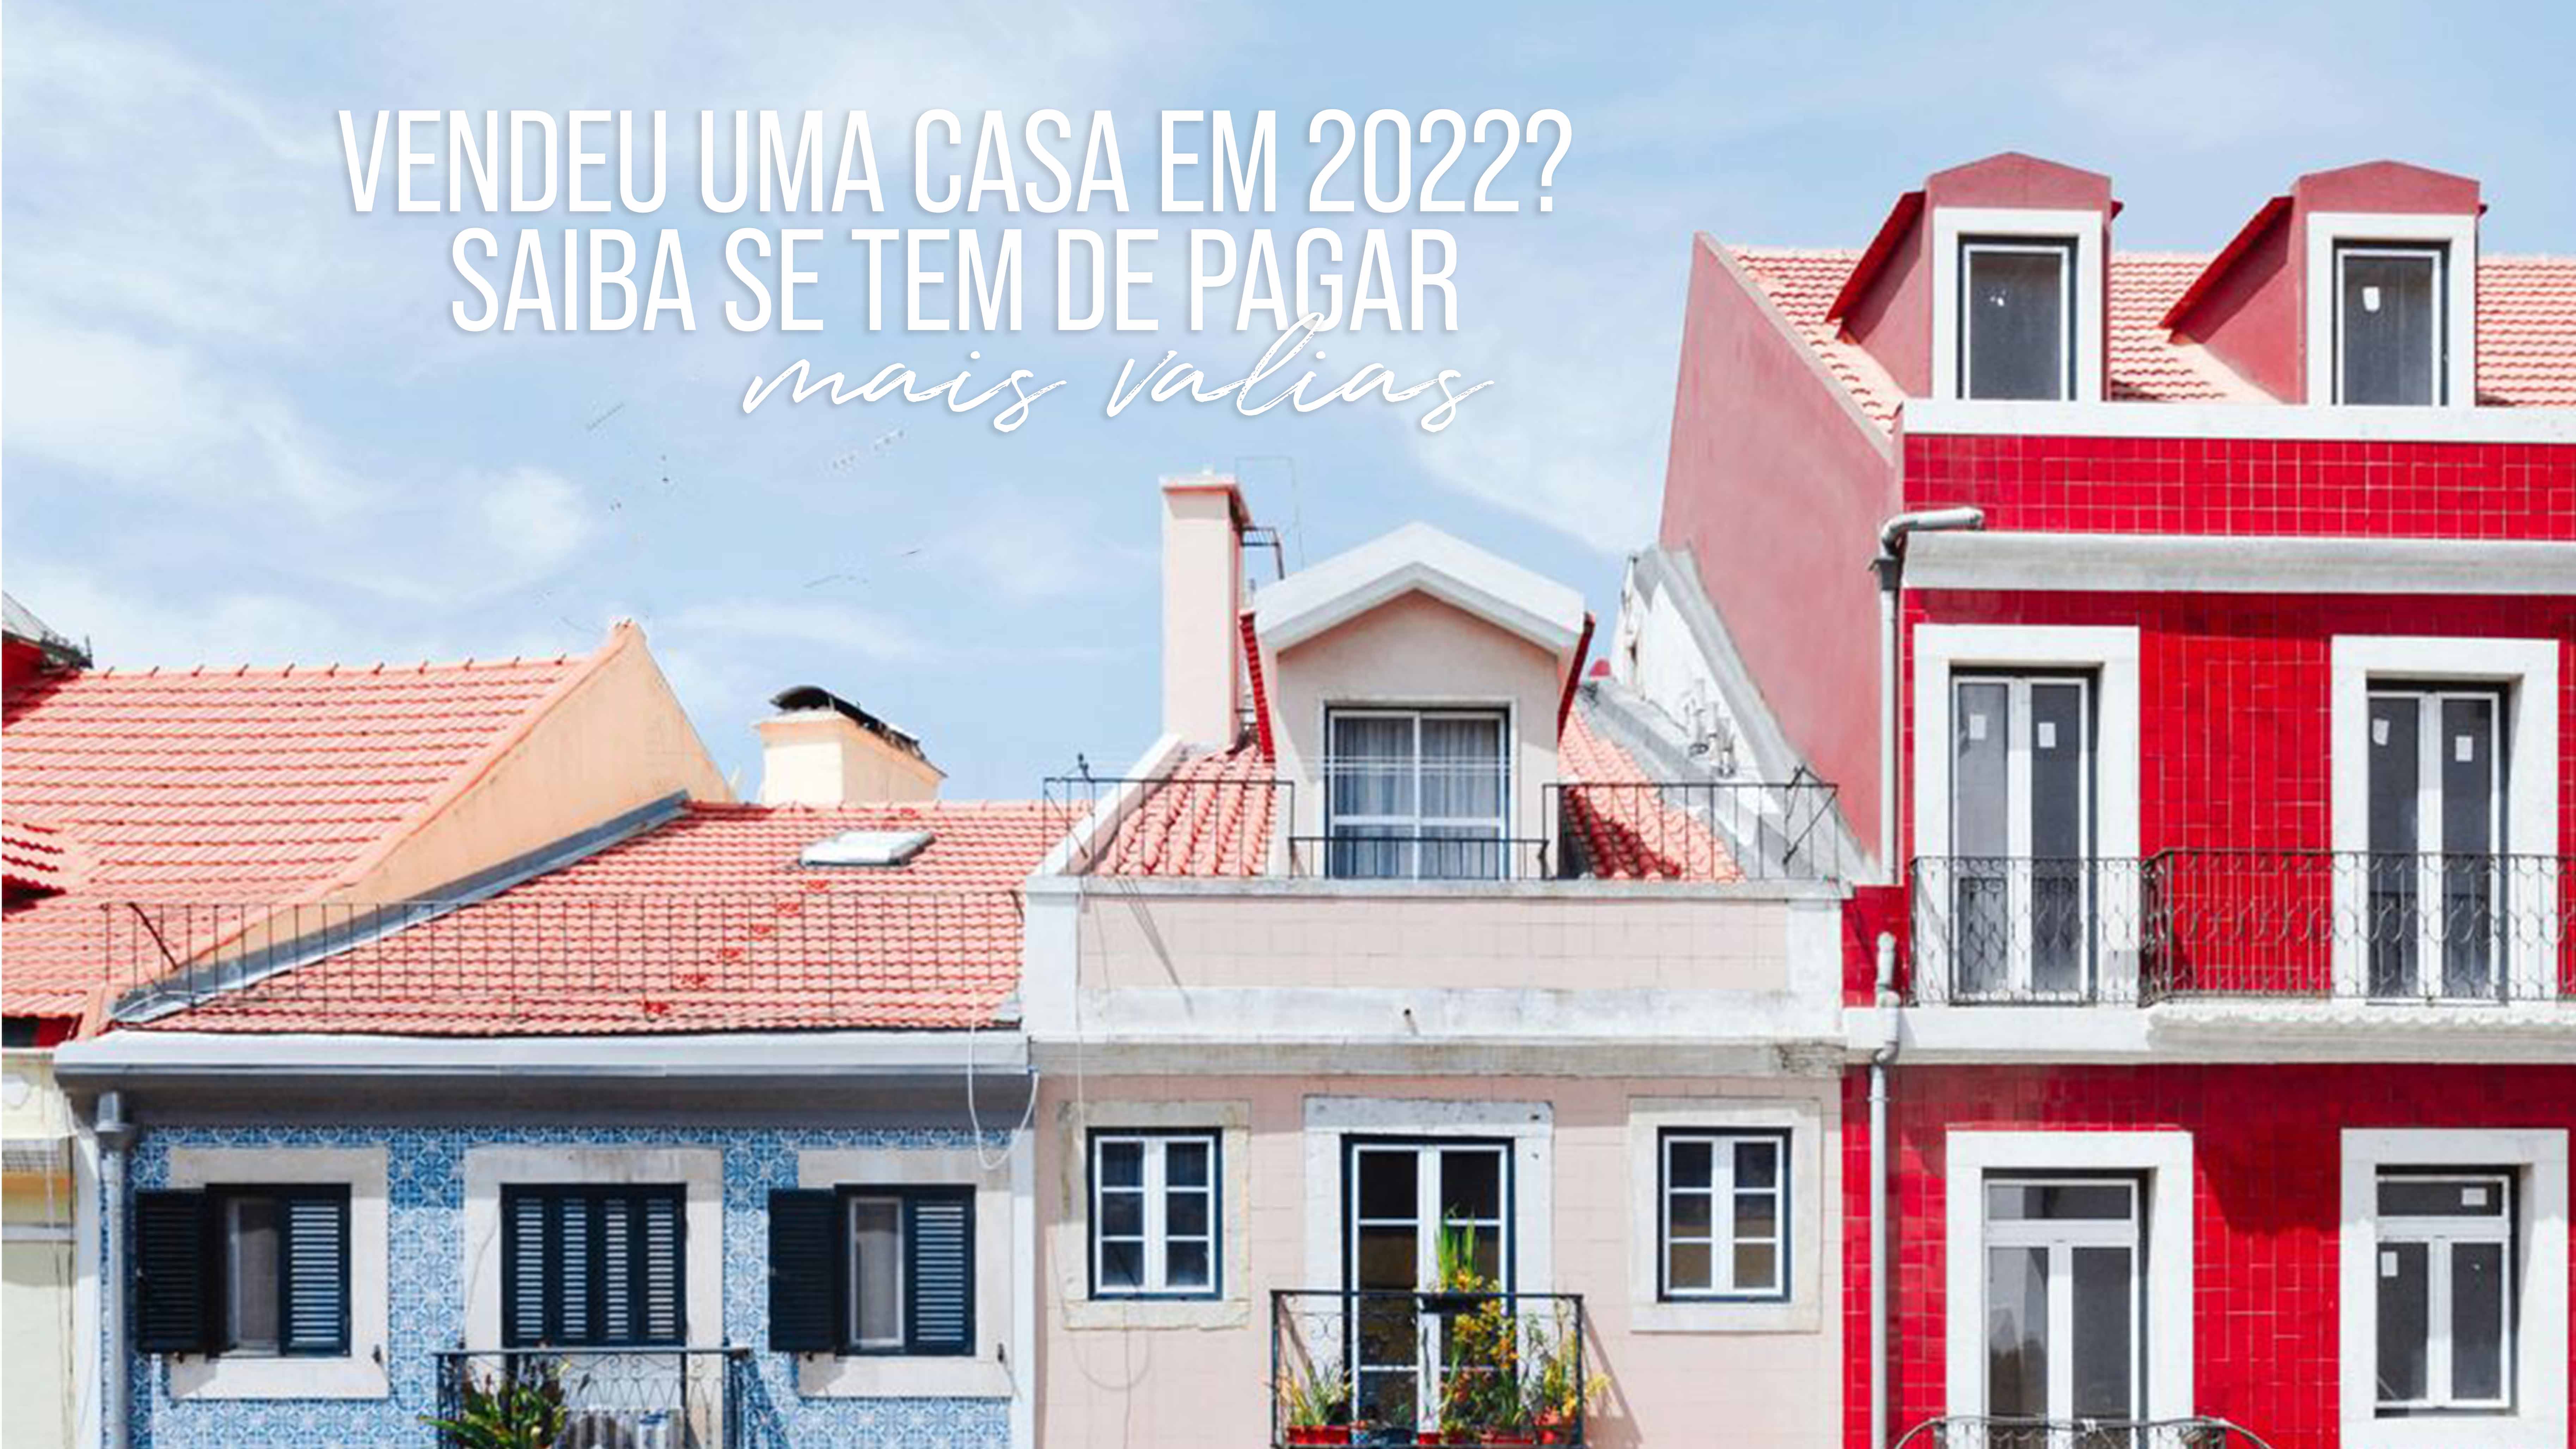 Portugal, um dos destinos mais procurados para investimento imobiliário em 2024